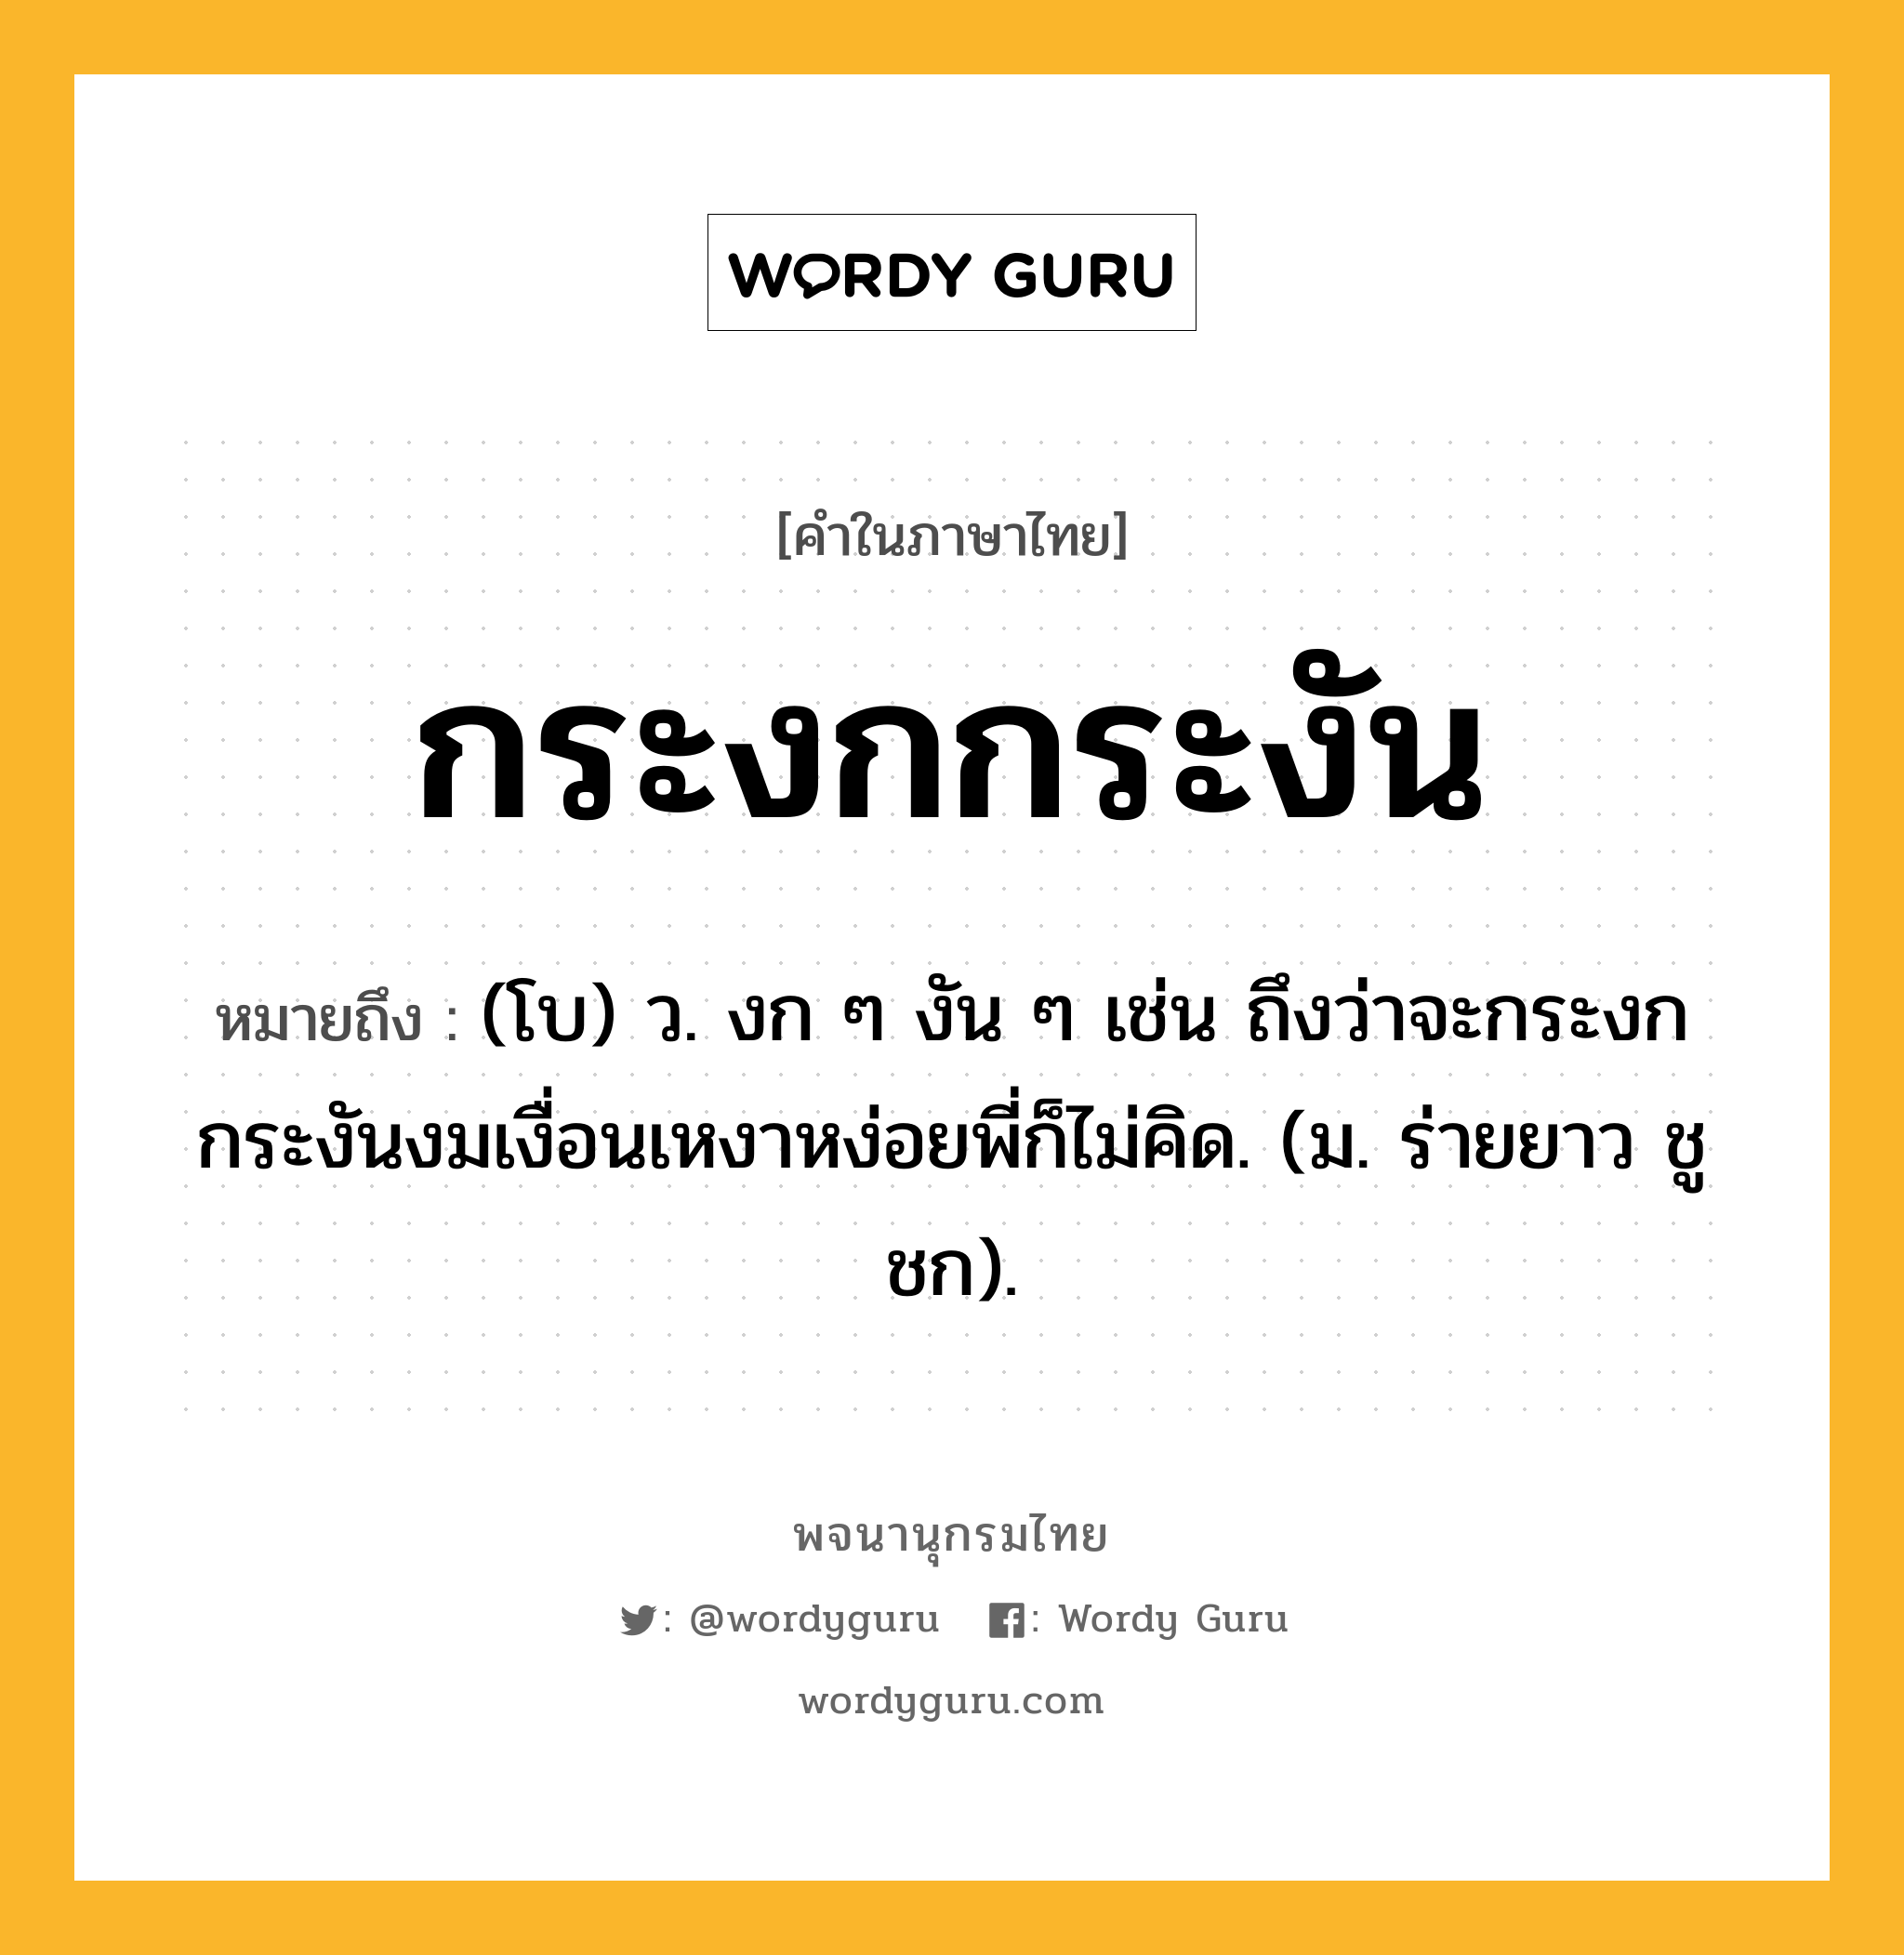 กระงกกระงัน ความหมาย หมายถึงอะไร?, คำในภาษาไทย กระงกกระงัน หมายถึง (โบ) ว. งก ๆ งัน ๆ เช่น ถึงว่าจะกระงกกระงันงมเงื่อนเหงาหง่อยพี่ก็ไม่คิด. (ม. ร่ายยาว ชูชก).